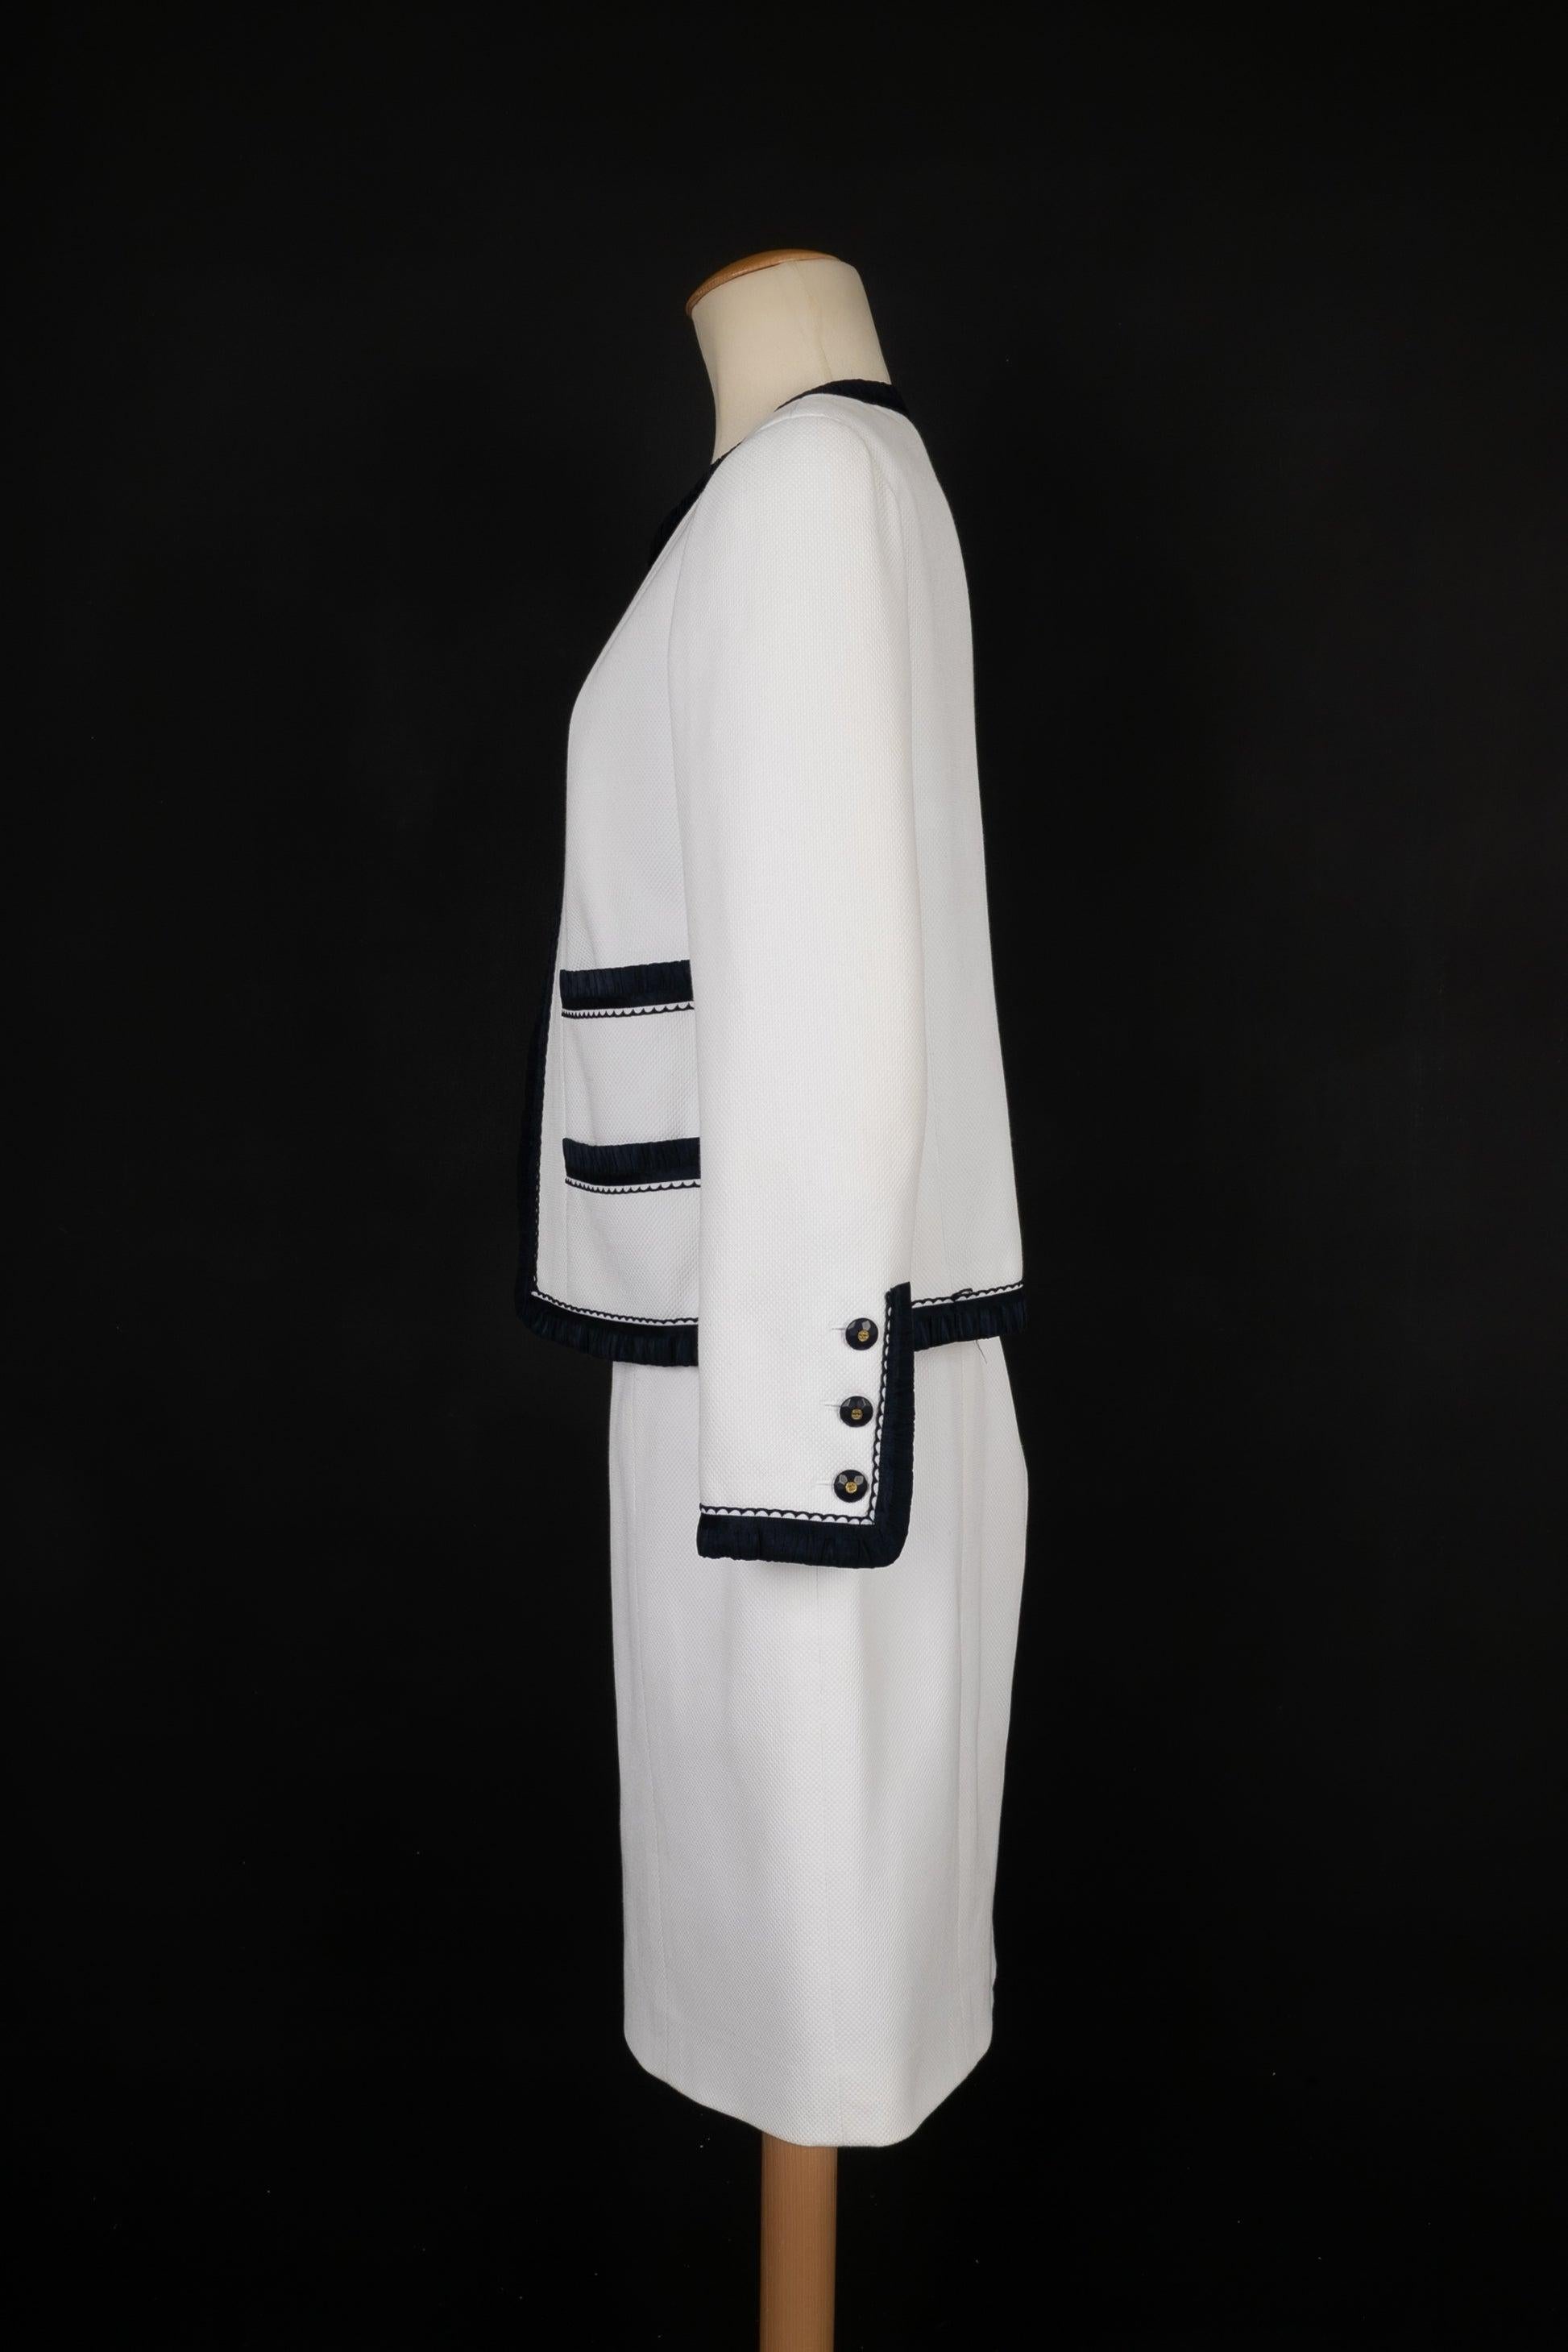 Chanel - Ensemble en soie bleu marine bordé de coton blanc et composé d'une veste et d'une jupe. Doublure en soie. Taille 42FR indiquée. Collectional 1994.

Informations complémentaires :
Condit : Très bon état.
Dimensions : Veste : Largeur des